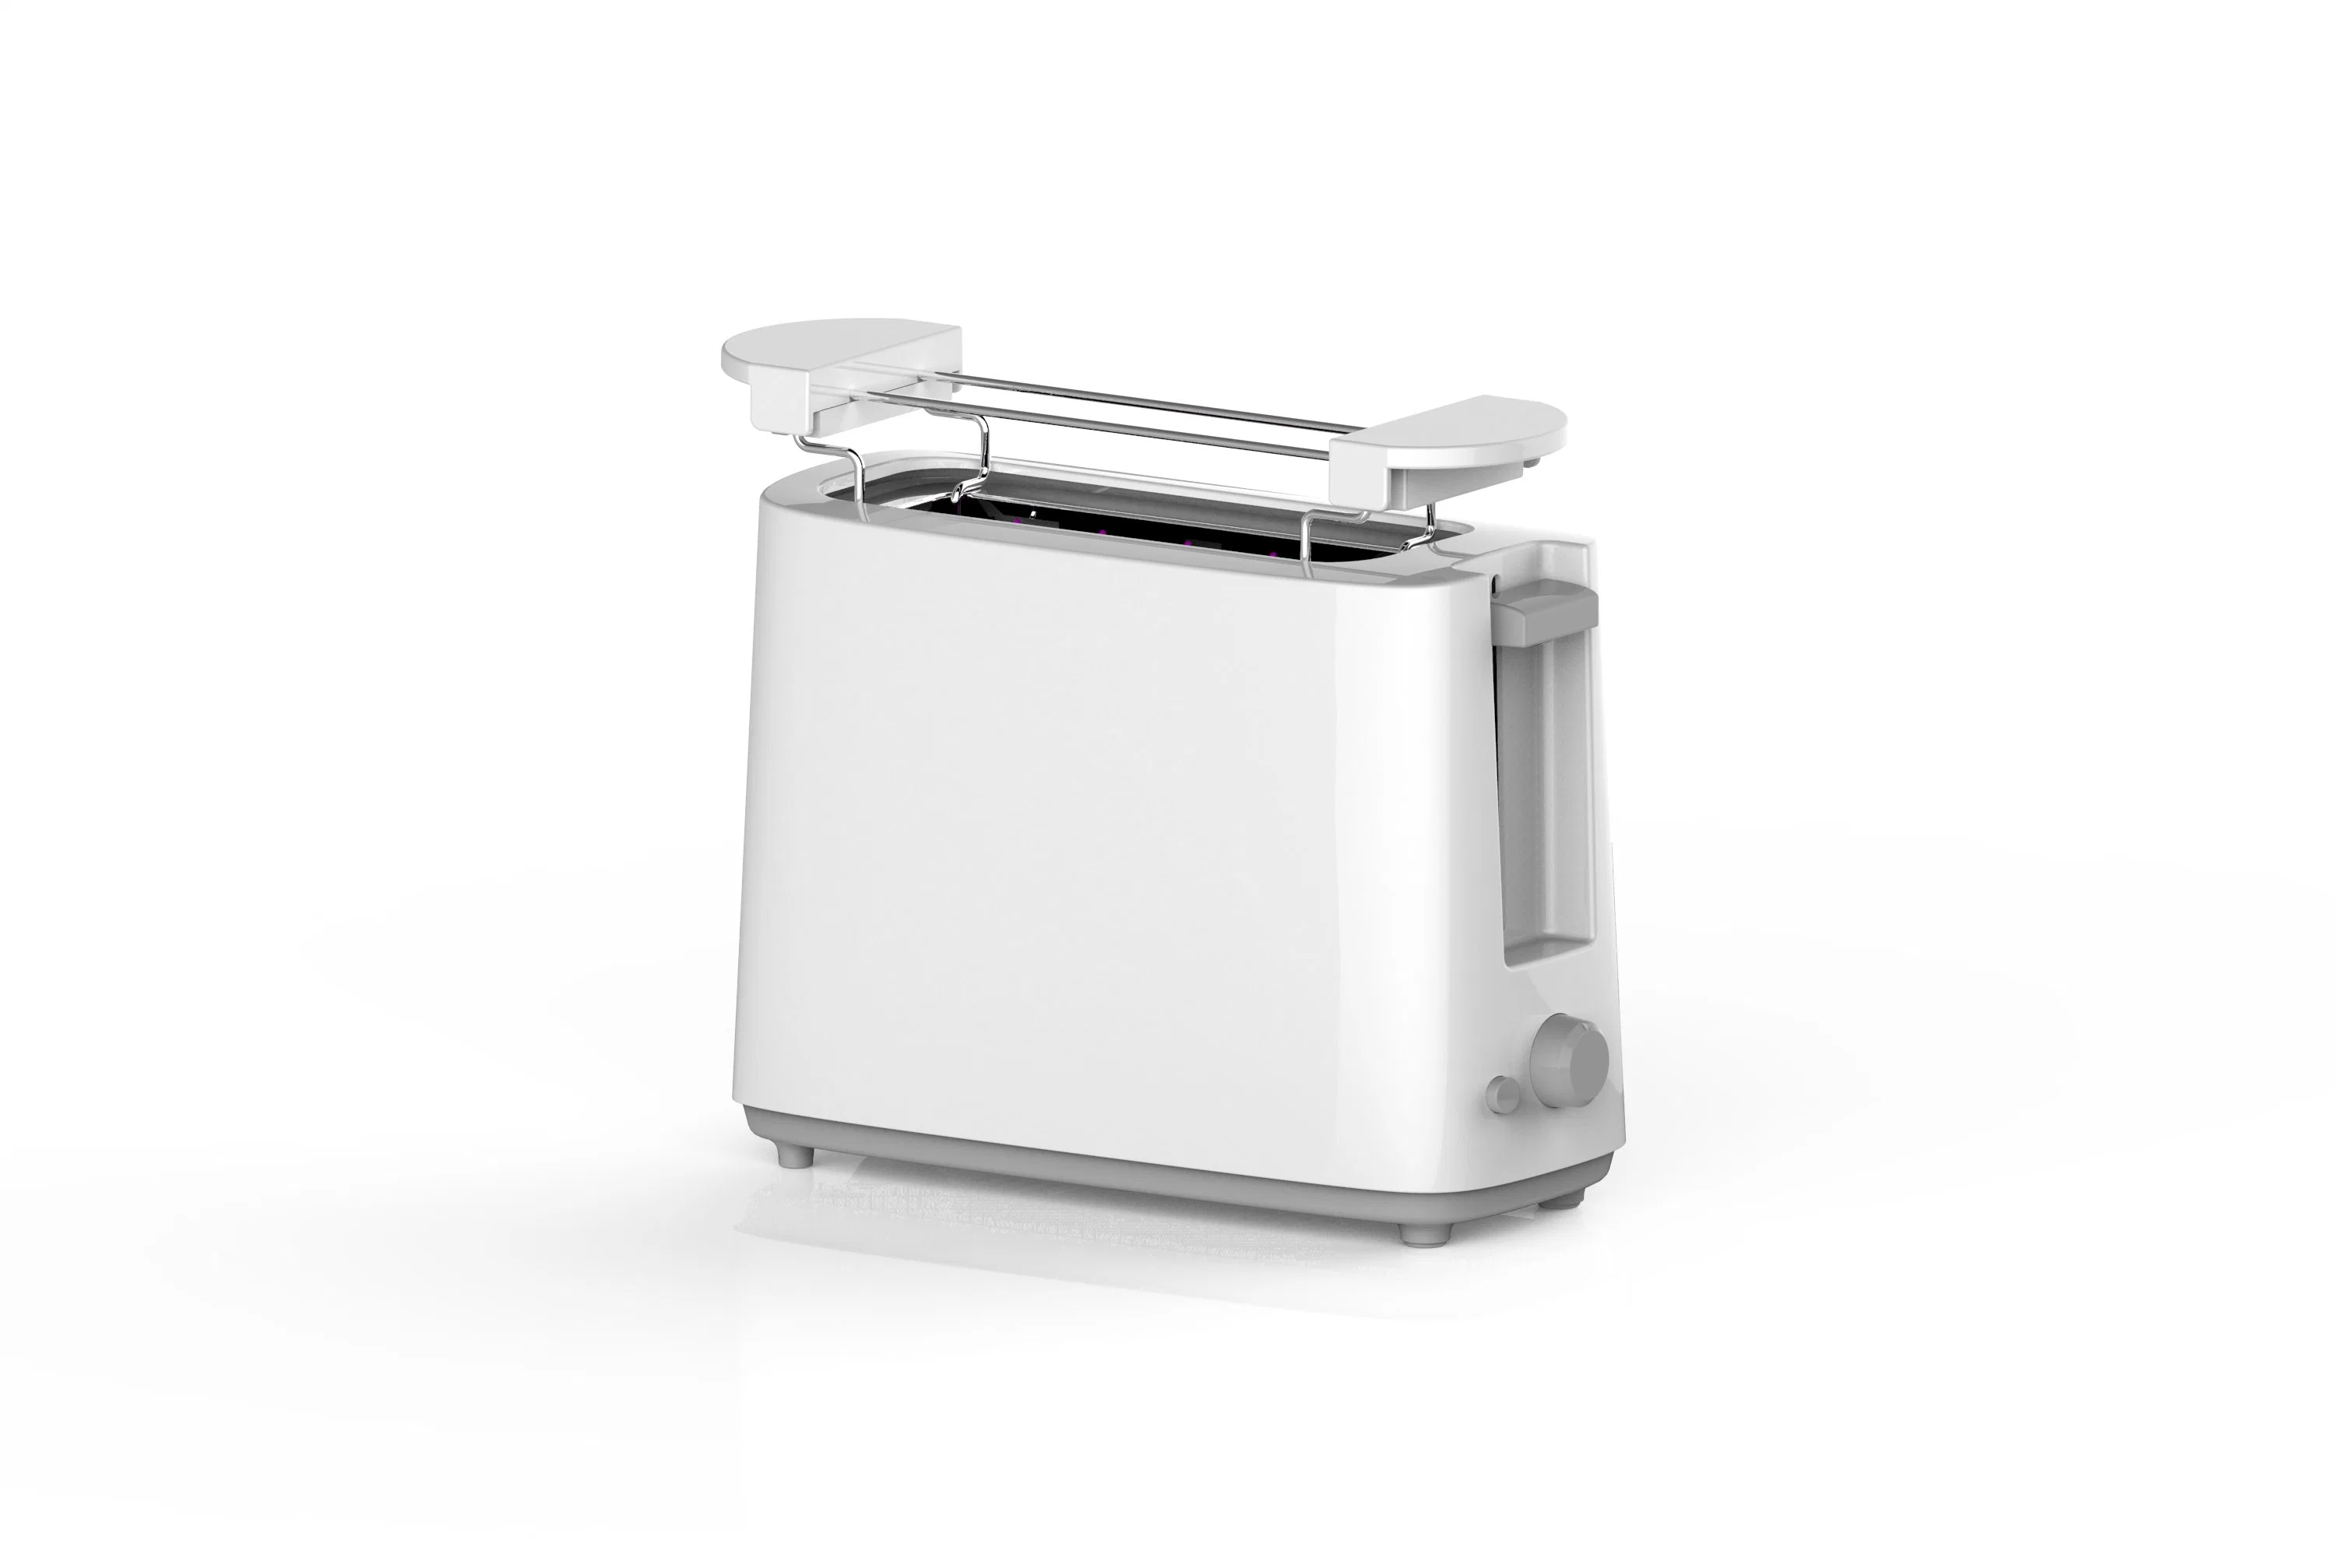 Longbank Mini 1 Slice Smart Electric Bread Sandwich Maker Toaster